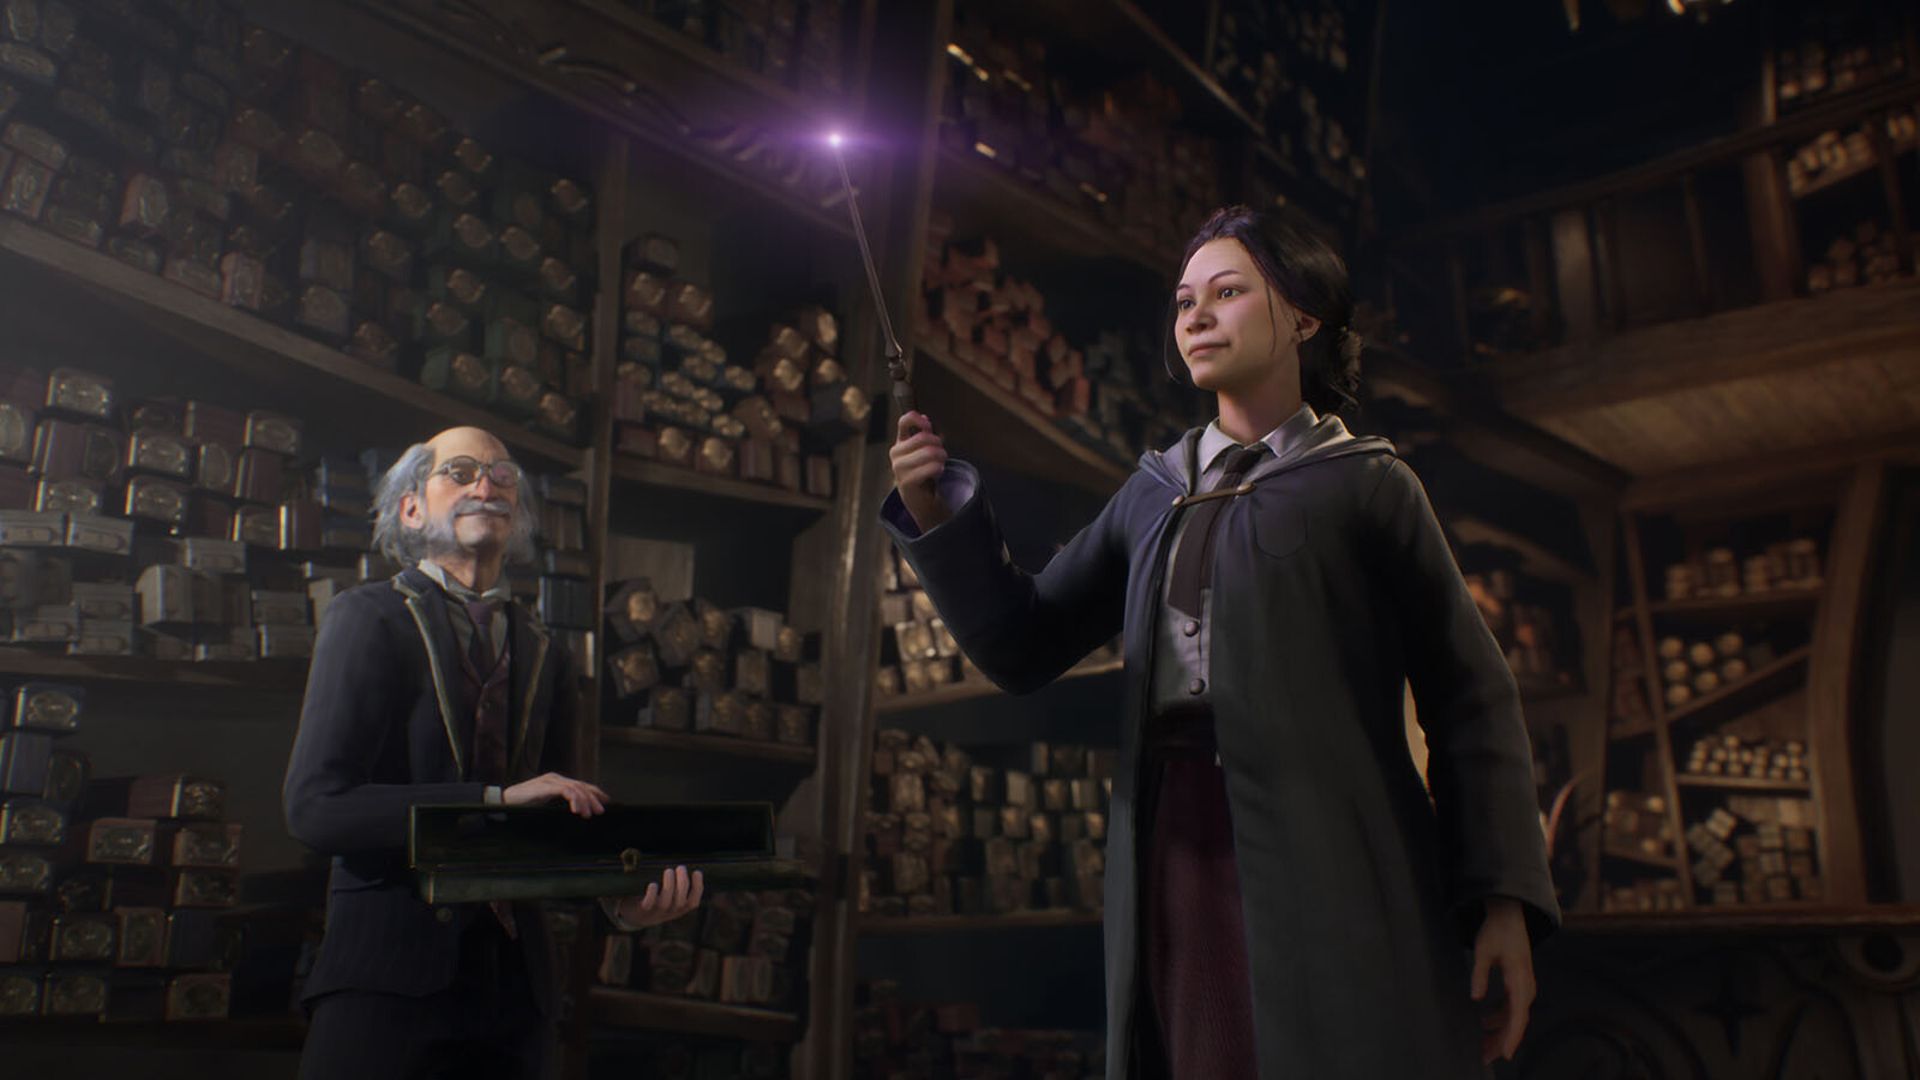 Hogwarts Legacy L'héritage de Poudlard : la Collector PS5 est